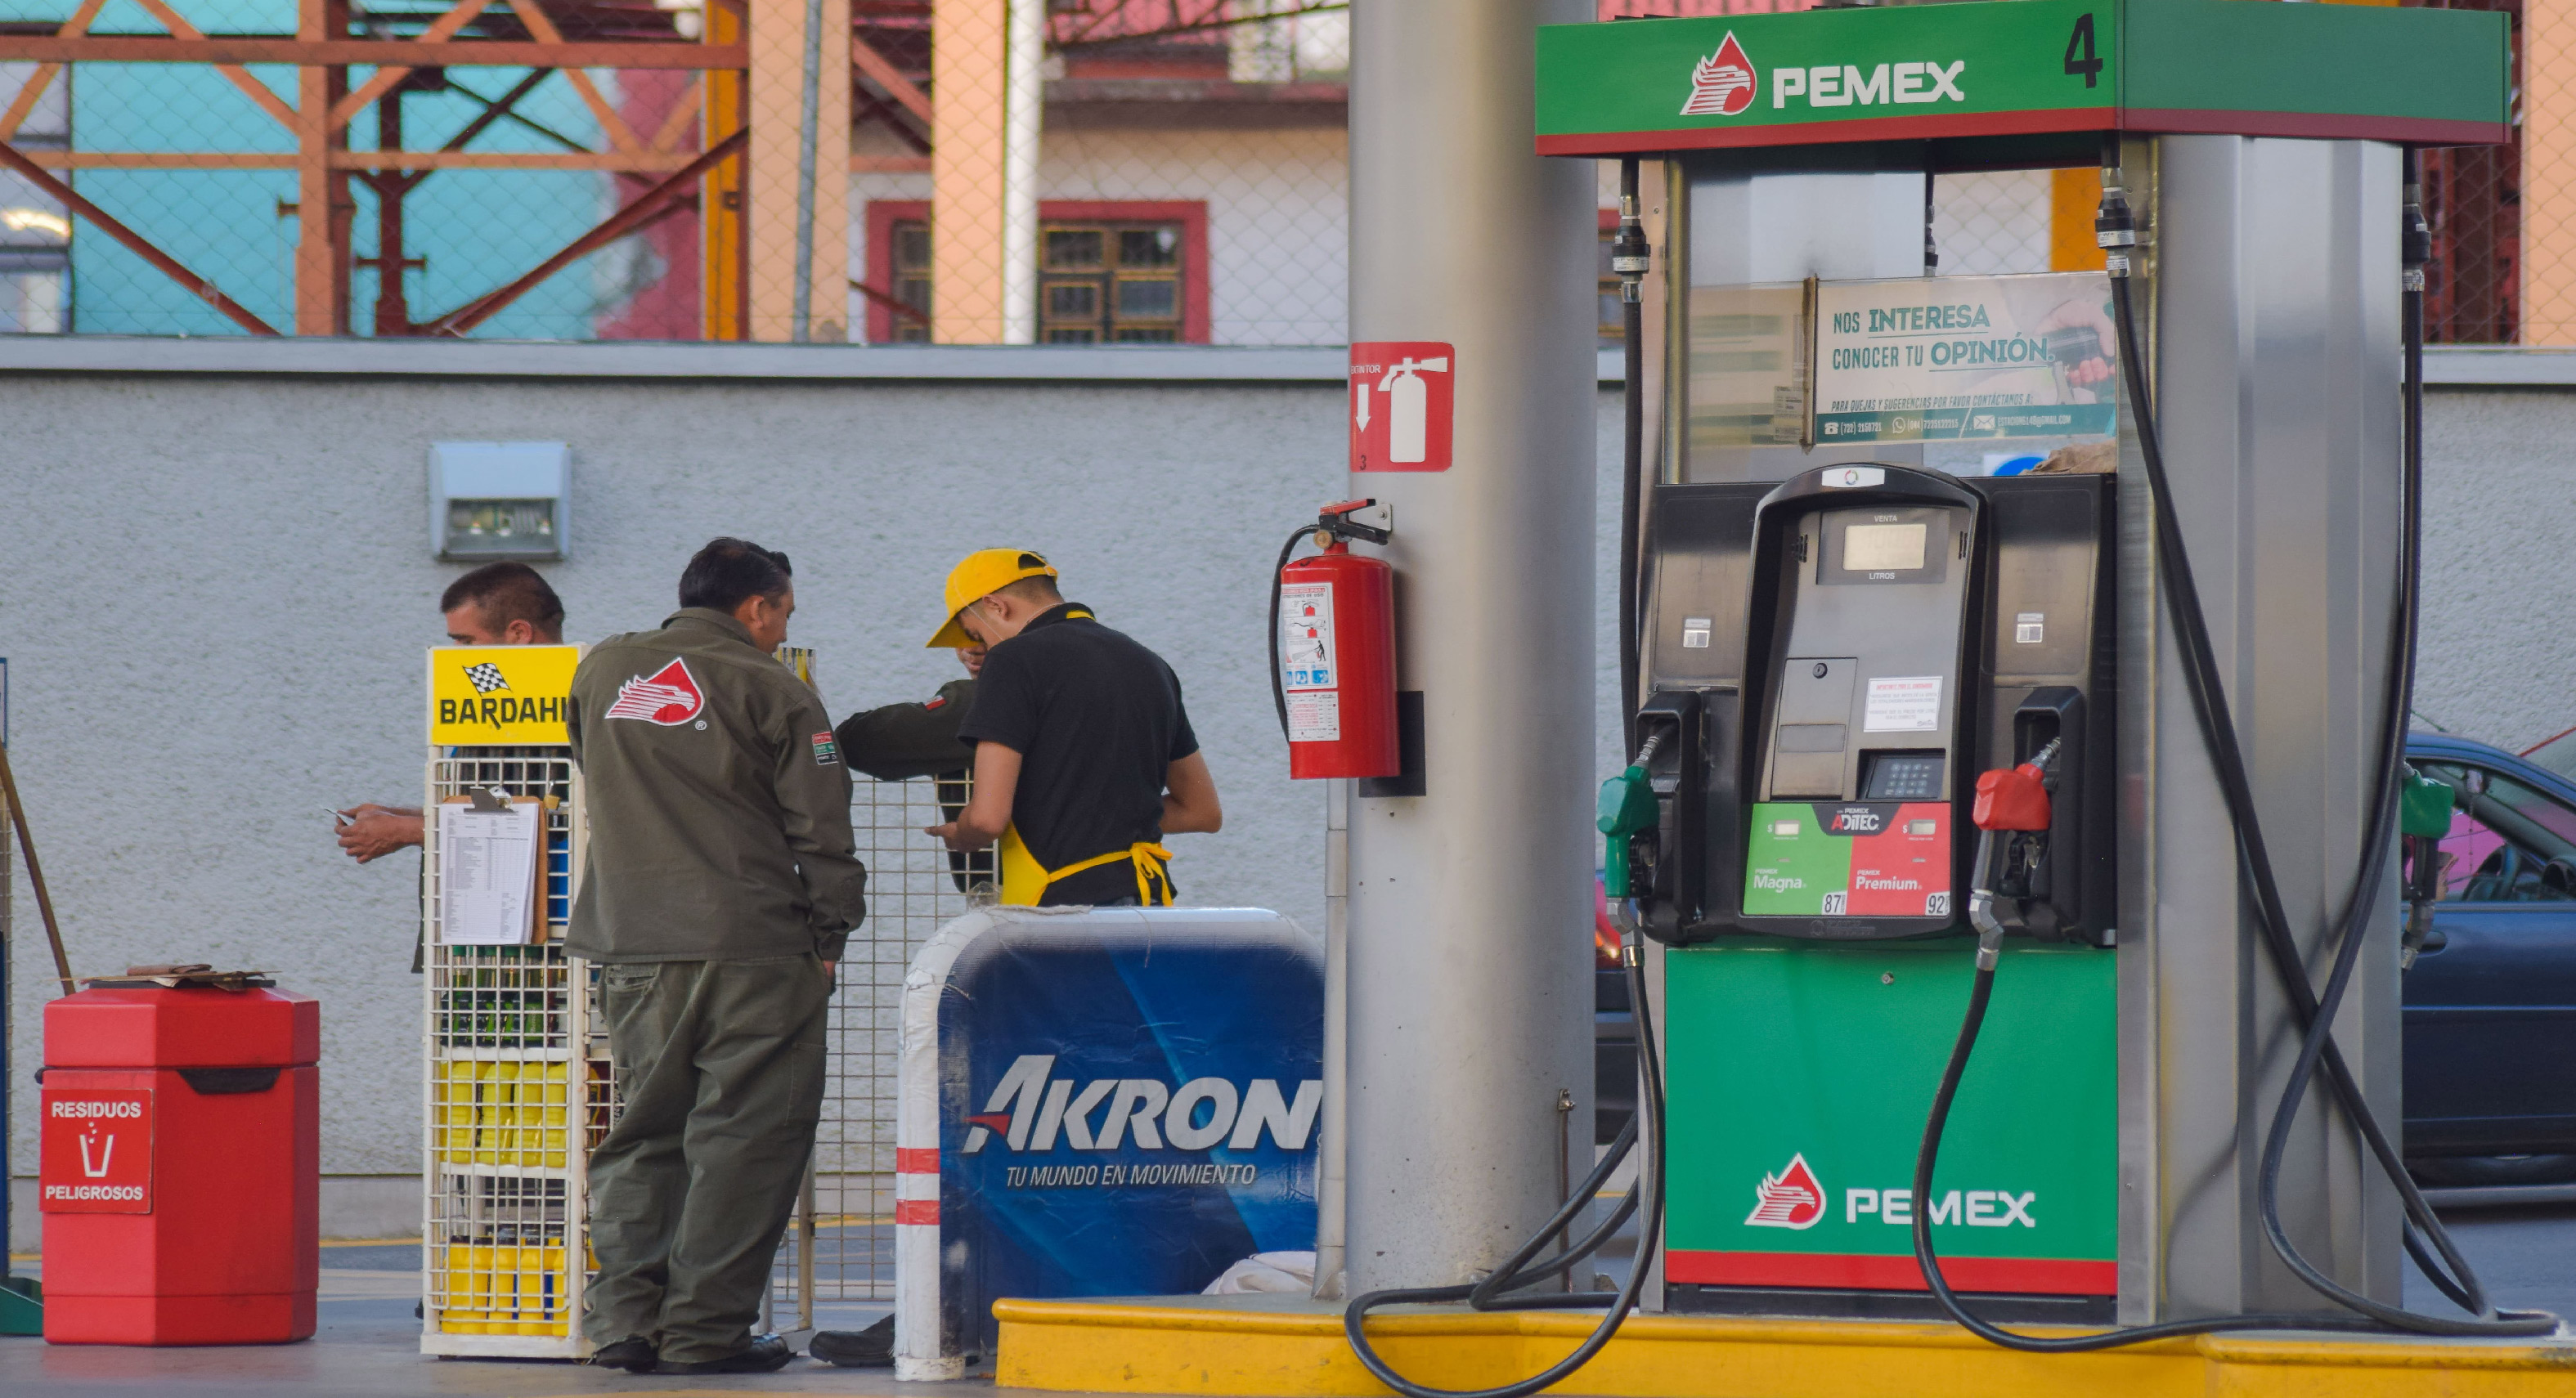 Hacienda retira estimulo fiscal a gasolina Premium por precios altos